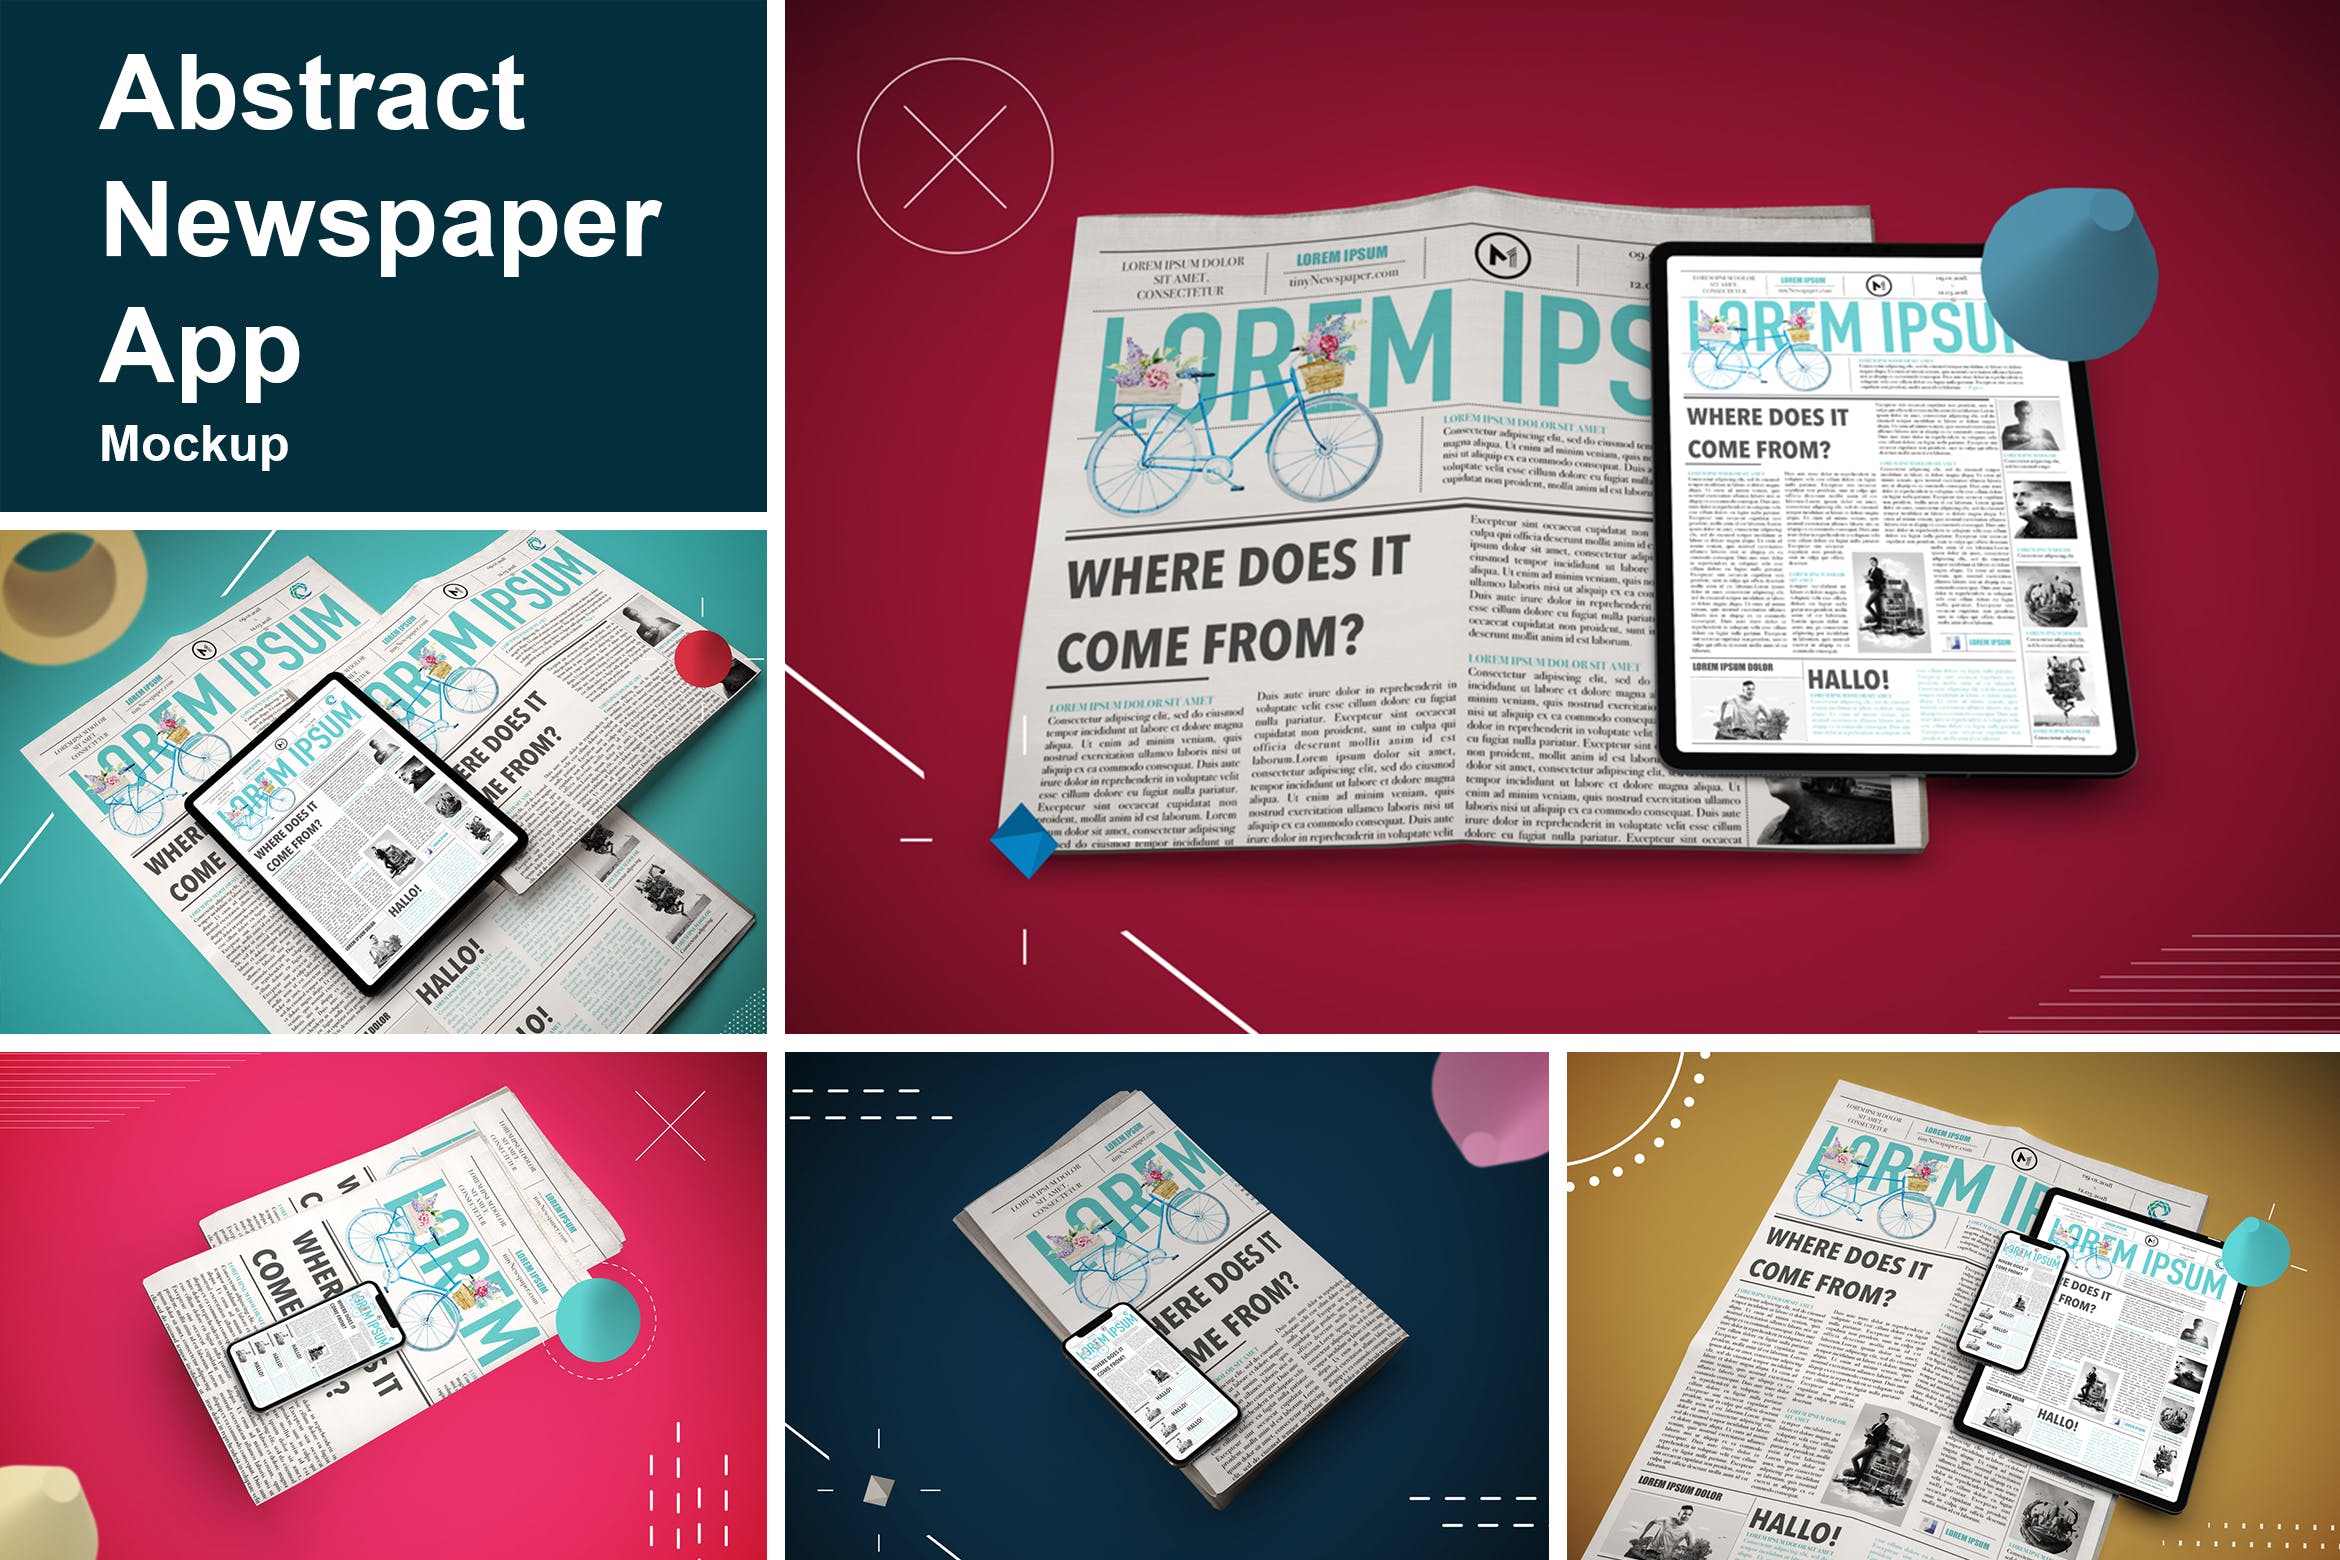 抽象设计风格报纸资讯类APP应用UI设计效果图第一素材精选样机 Abstract Newspaper App MockUp插图